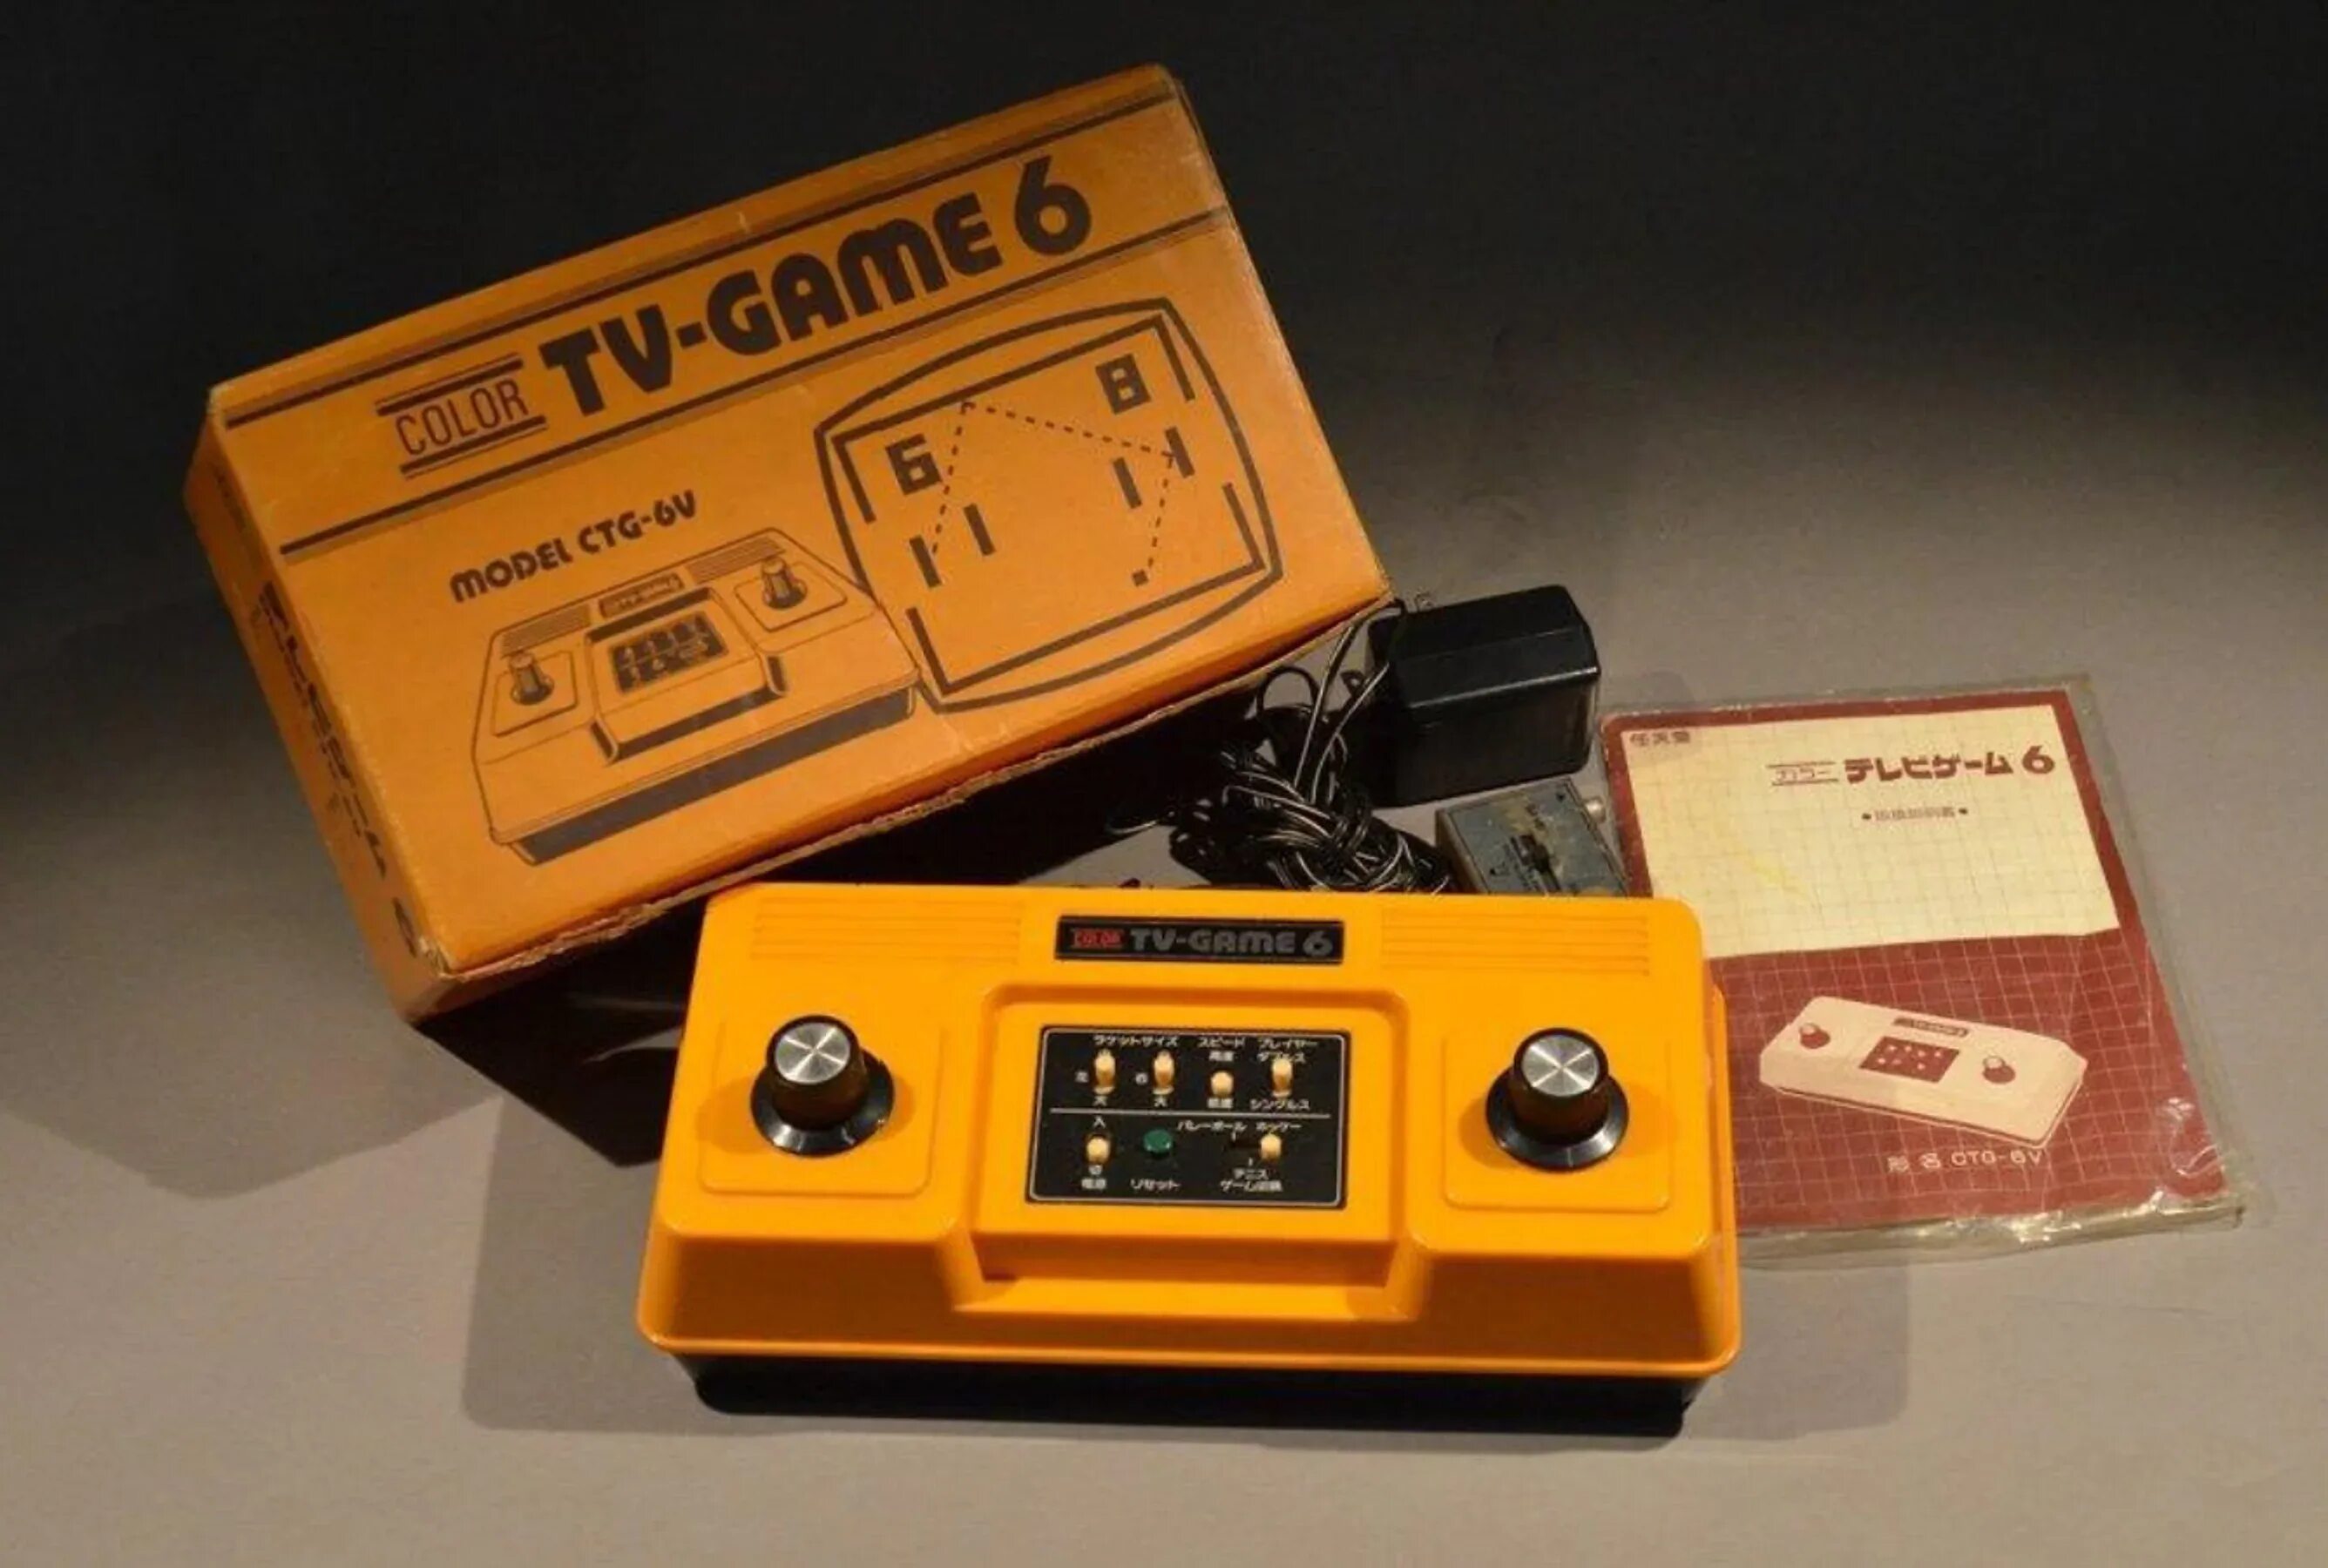 Nintendo color. Нинтендо Color TV game игры. TV-game 6 Nintendo. Nintendo TV Computer 1977. Color TV game 6.